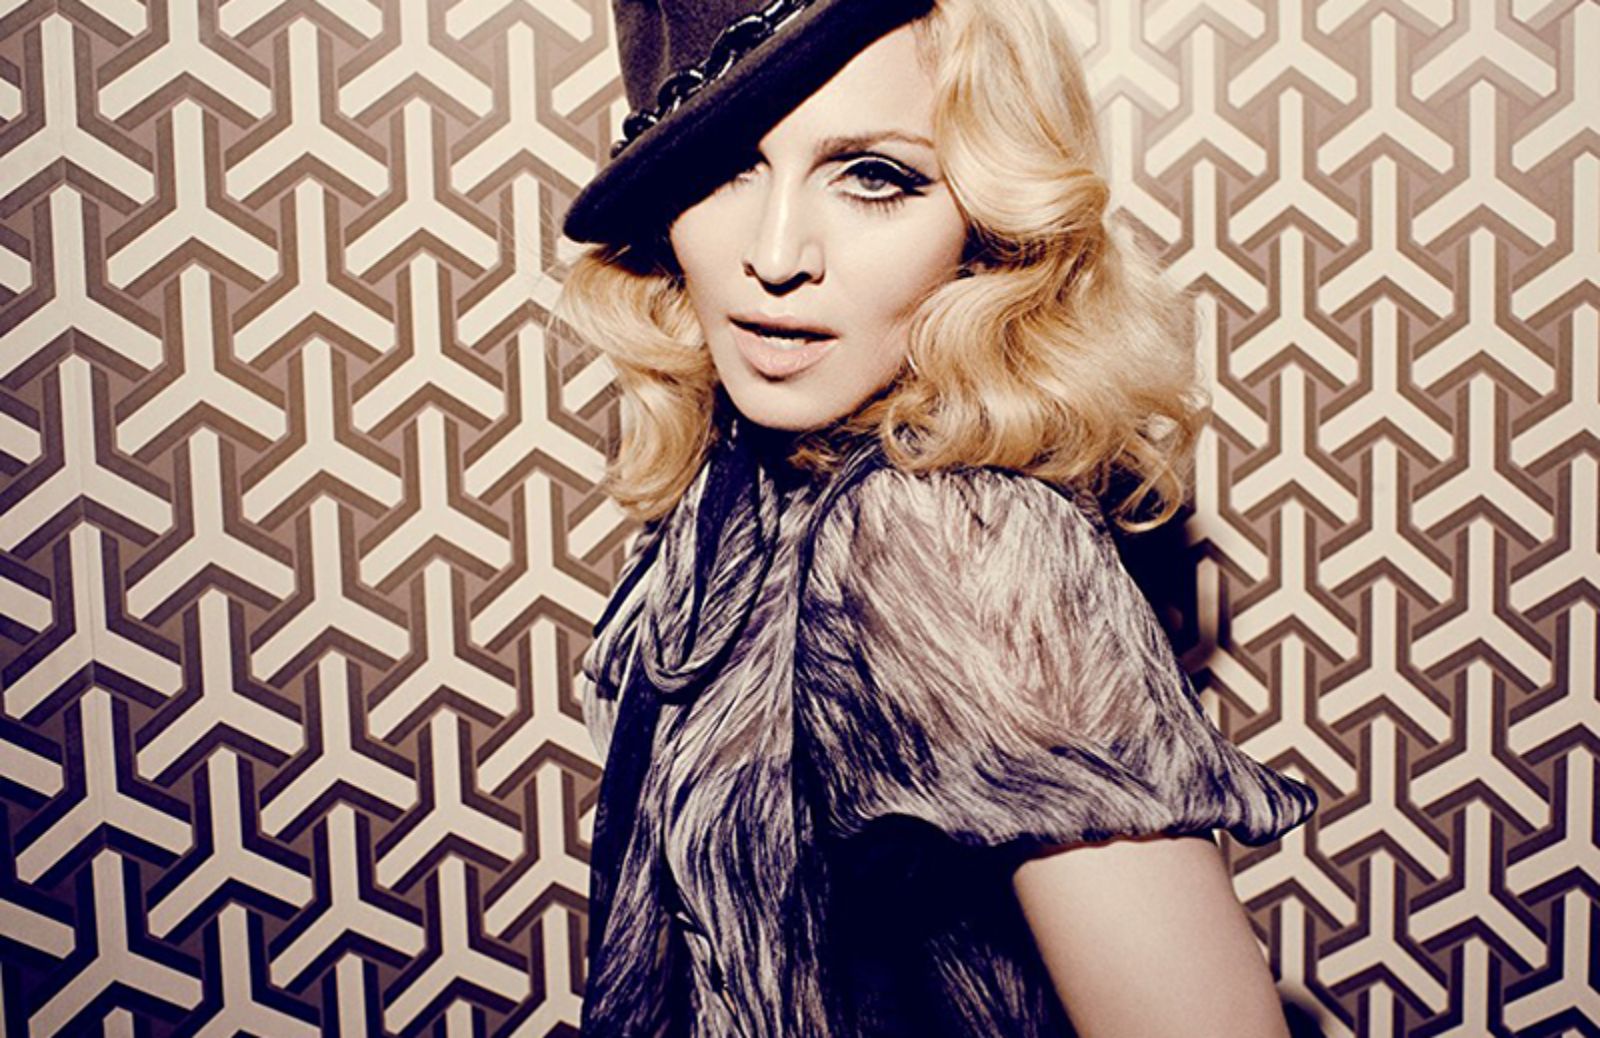 Le 5 frasi più famose di Madonna